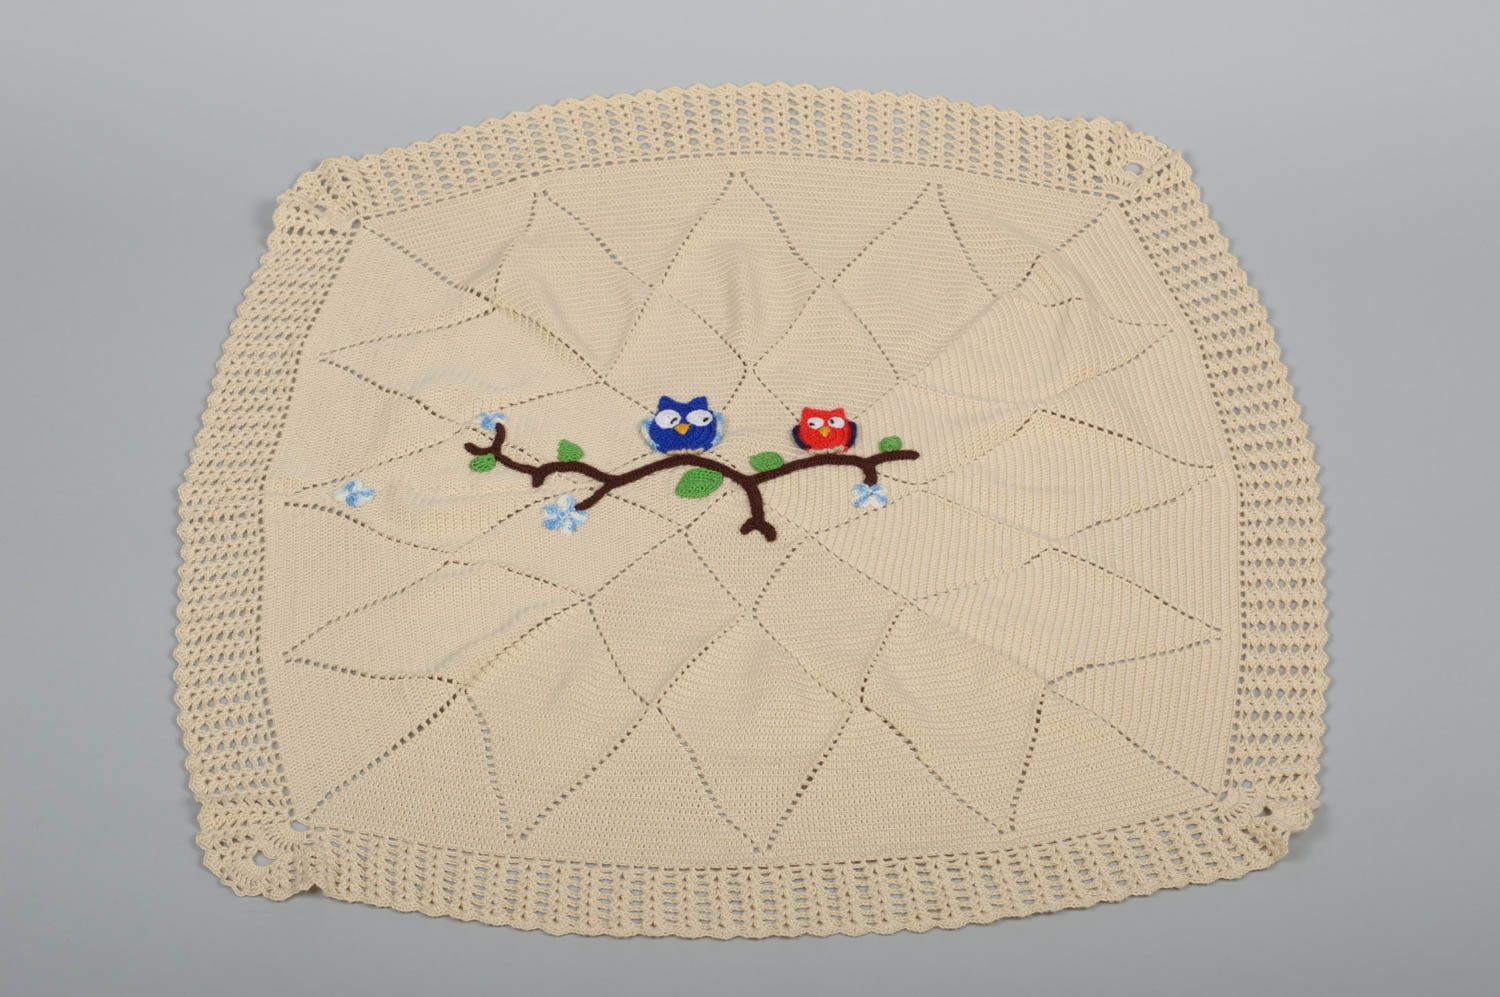 Одеяло ручной работы одеяло крючком детское одеяло из хлопковых ниток Совы фото 1